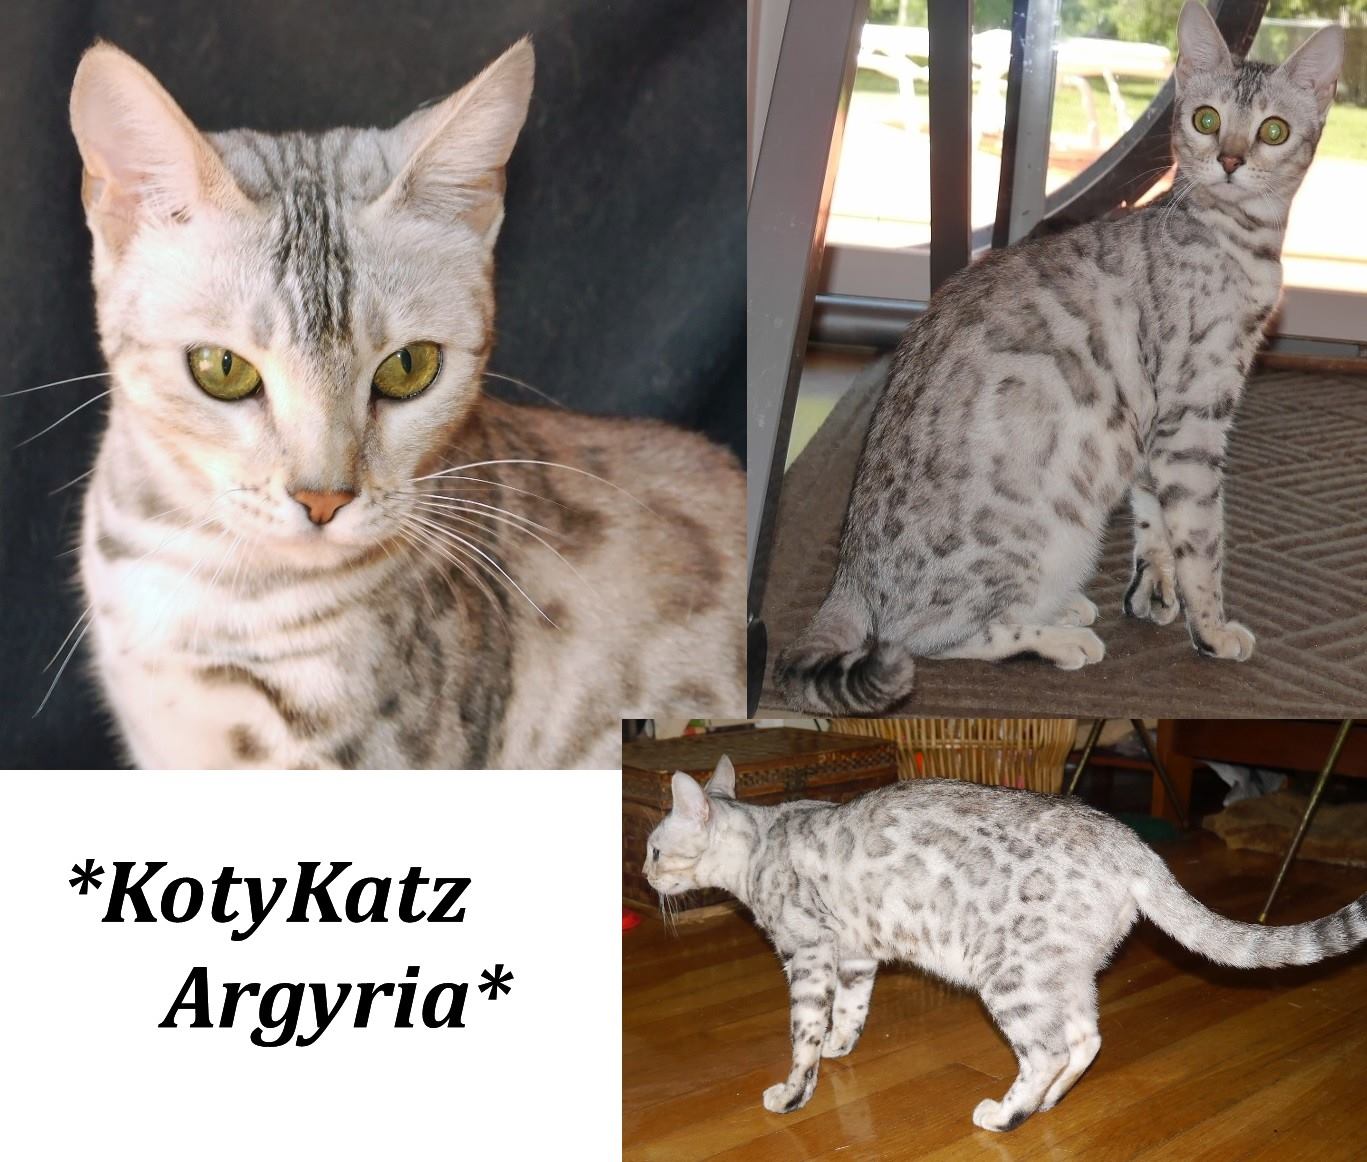 KotyKatz Argyria